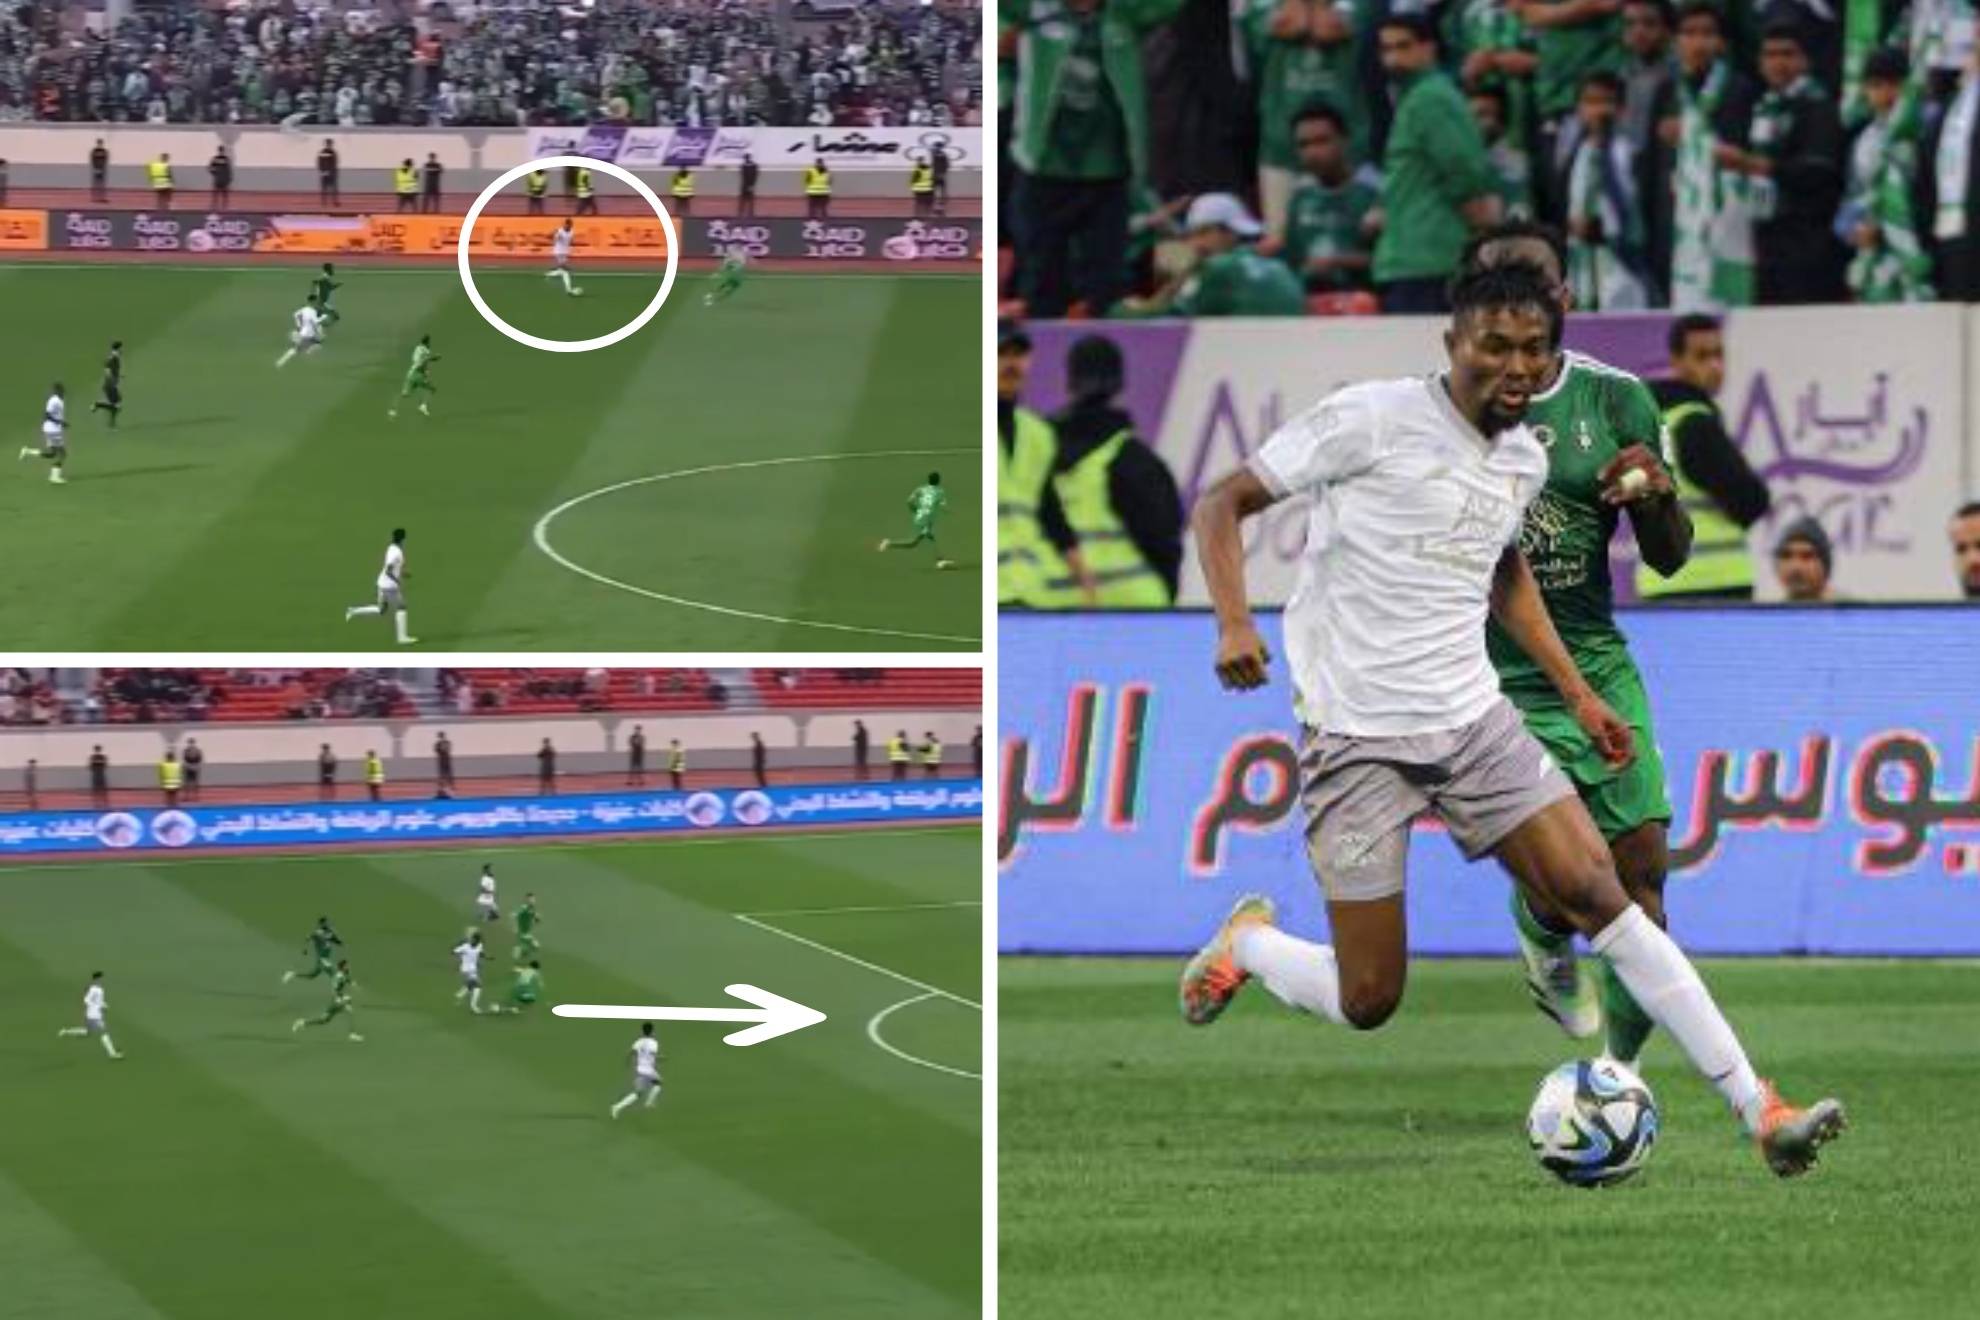 Fichó en 2015 por el Atlético, no llegó ni a debutar y ahora pone en pie la liga saudí con un gol maradoniano